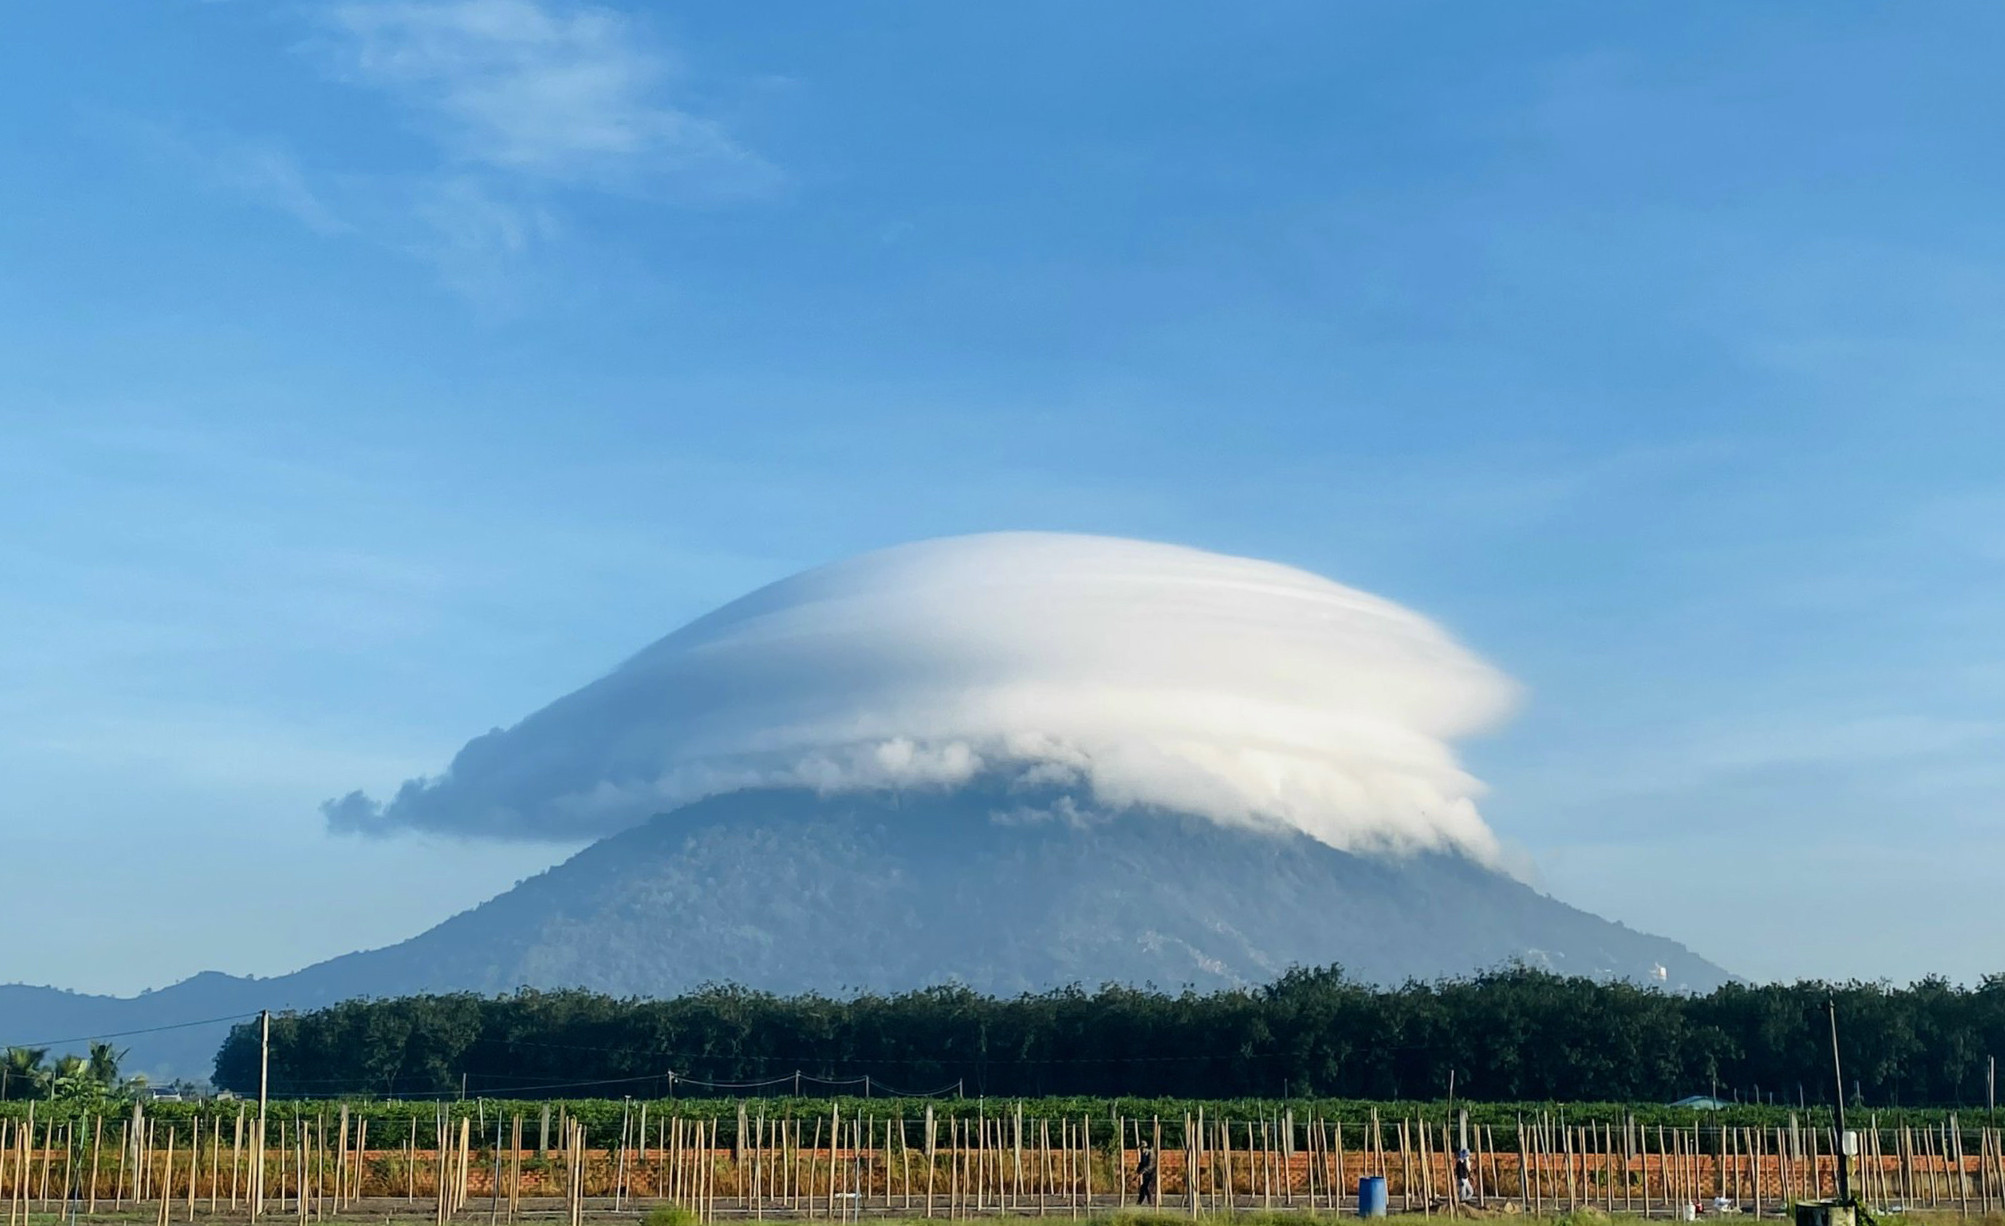 Những hình ảnh về mây đi quanh núi Bà Đen sẽ khiến bạn bị dụ dỗ bởi vẻ đẹp hoang sơ và bất tận của thiên nhiên. Hãy cùng chúng tôi trải nghiệm những khoảnh khắc tuyệt vời này và cảm nhận đĩa bay của mây.